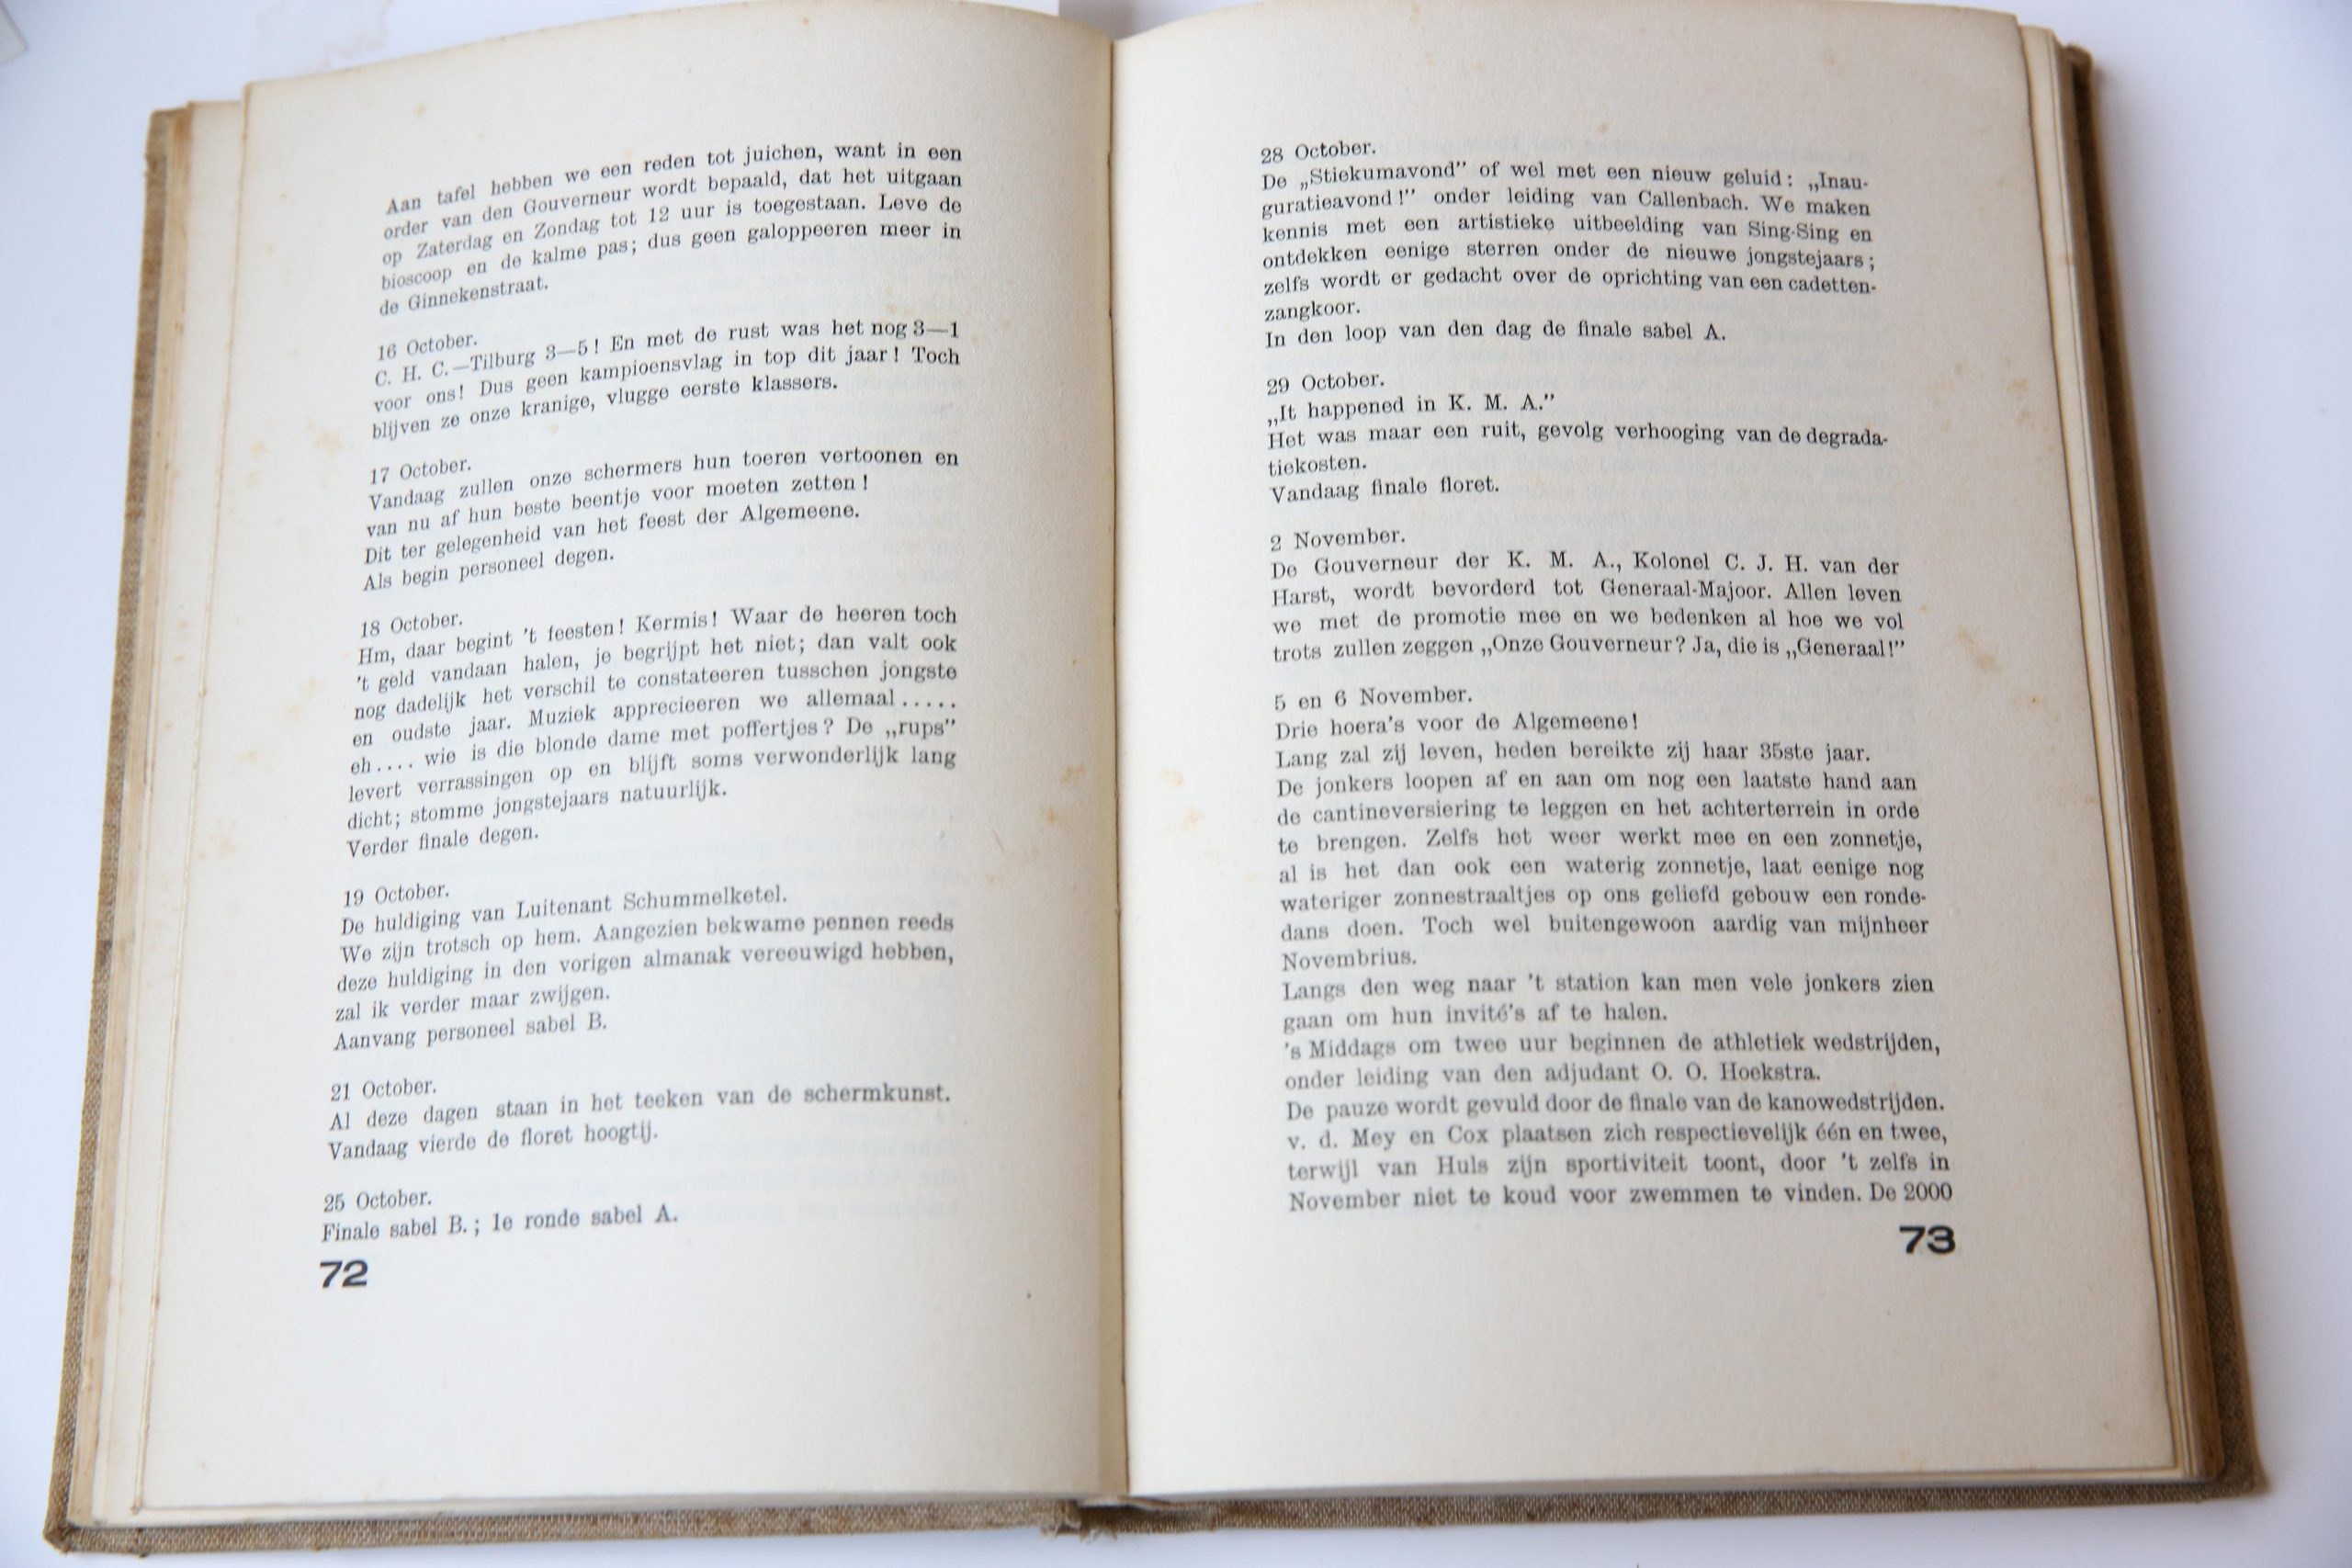 Cadetten Almanak 1934, Jubileumnummer ter gelegenheid van het 105-jarig bestaan der Koninklijke Militaire Academie: Uitgave van het corps Cadetten, 1934, 221 pp. Text in Dutch.